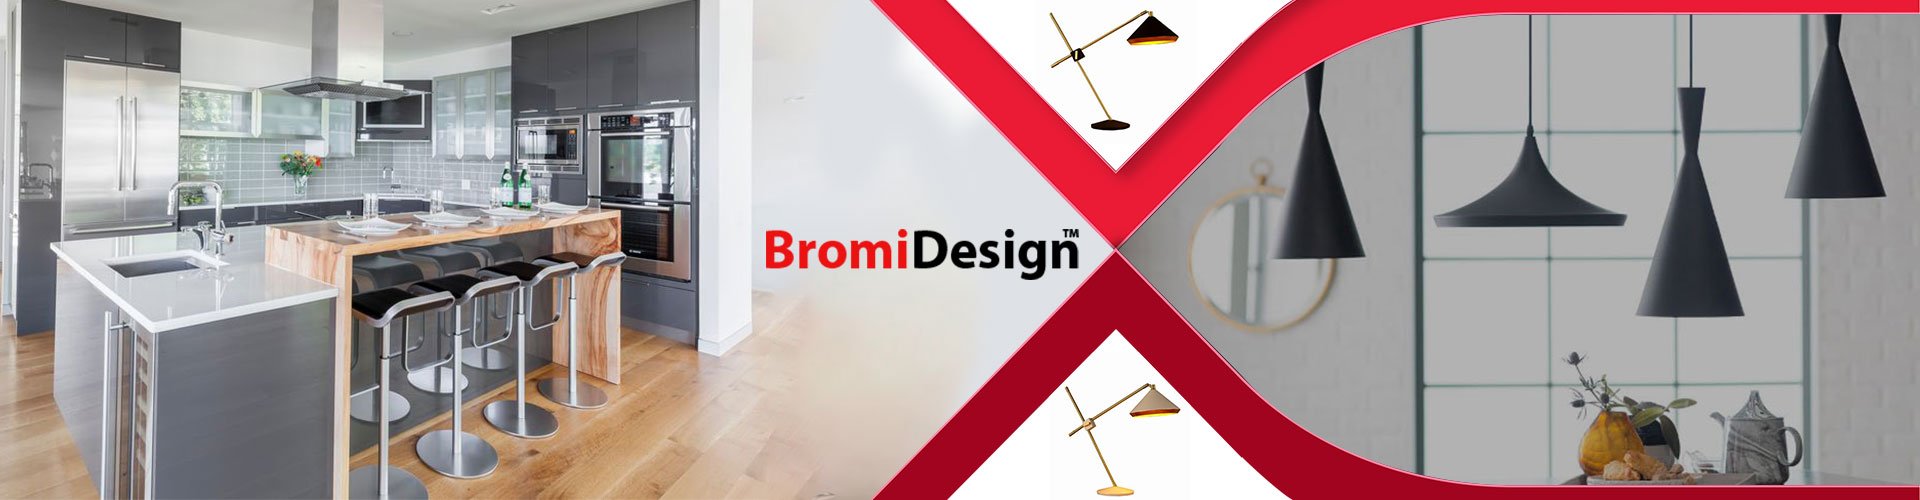 Bromi Design: Premier Furniture & Lighting Brand - GwG Outlet
– GWG Outlet
